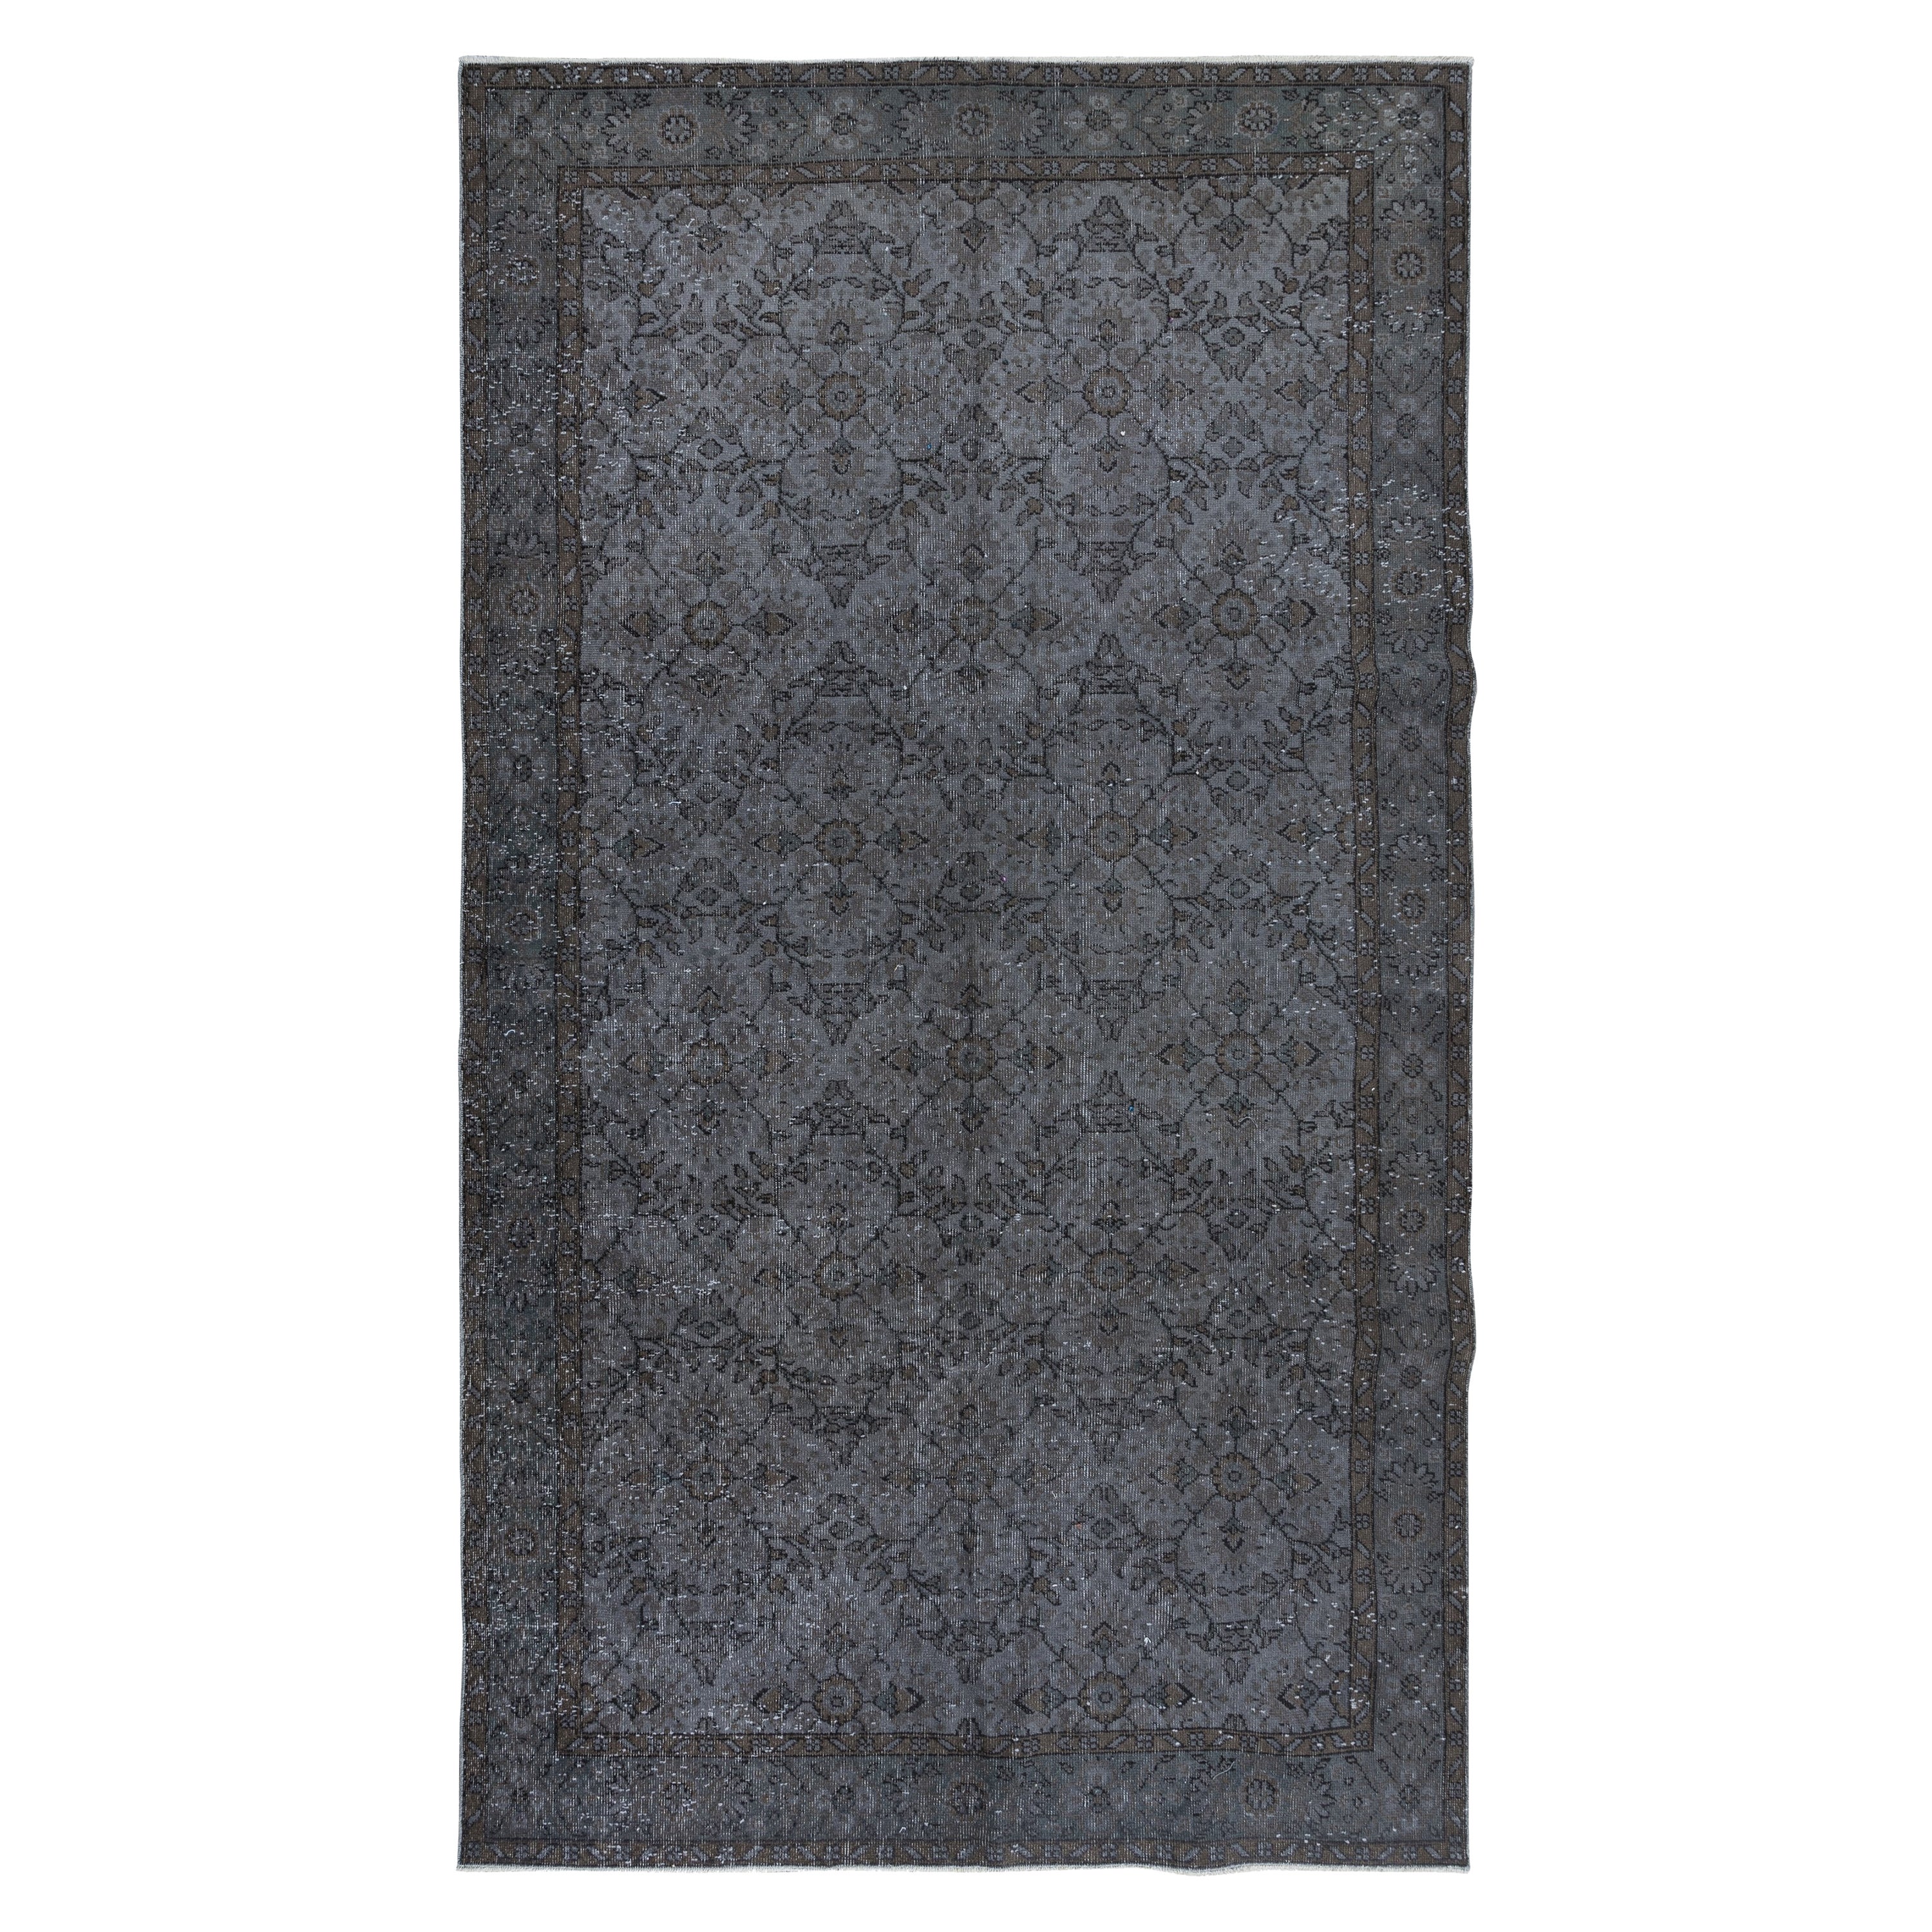 5.6x9.7 Ft Moderner türkischer Teppich in Grau, dekorativer handgefertigter Teppich in Blumenmuster in Grau